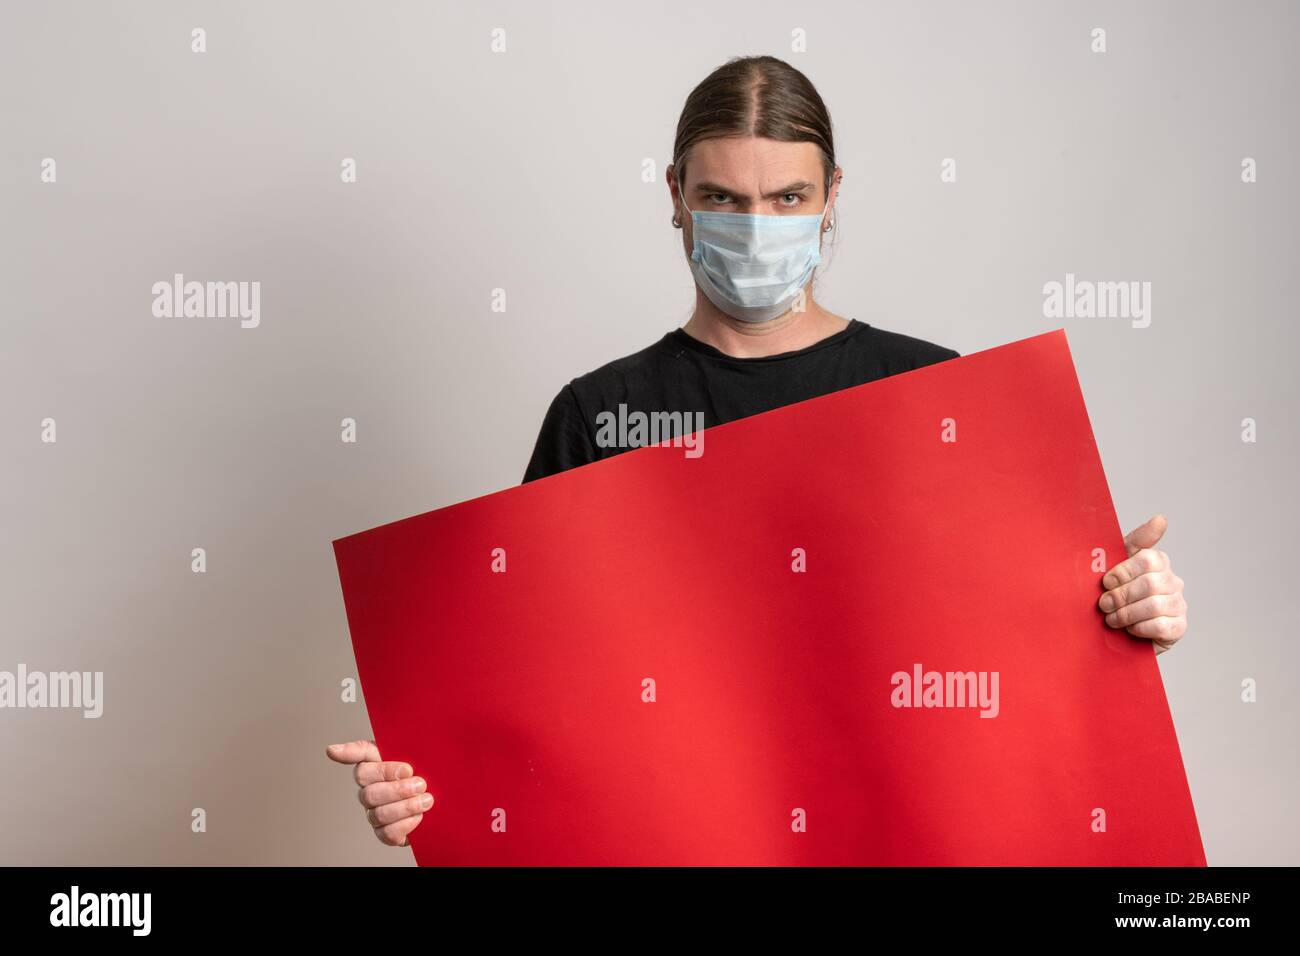 Primo piano di un giovane con maschera protettiva contro l'epidermide virale sta tenendo un cartone rosso vuoto su sfondo bianco. Spazio di copia disponibile Foto Stock